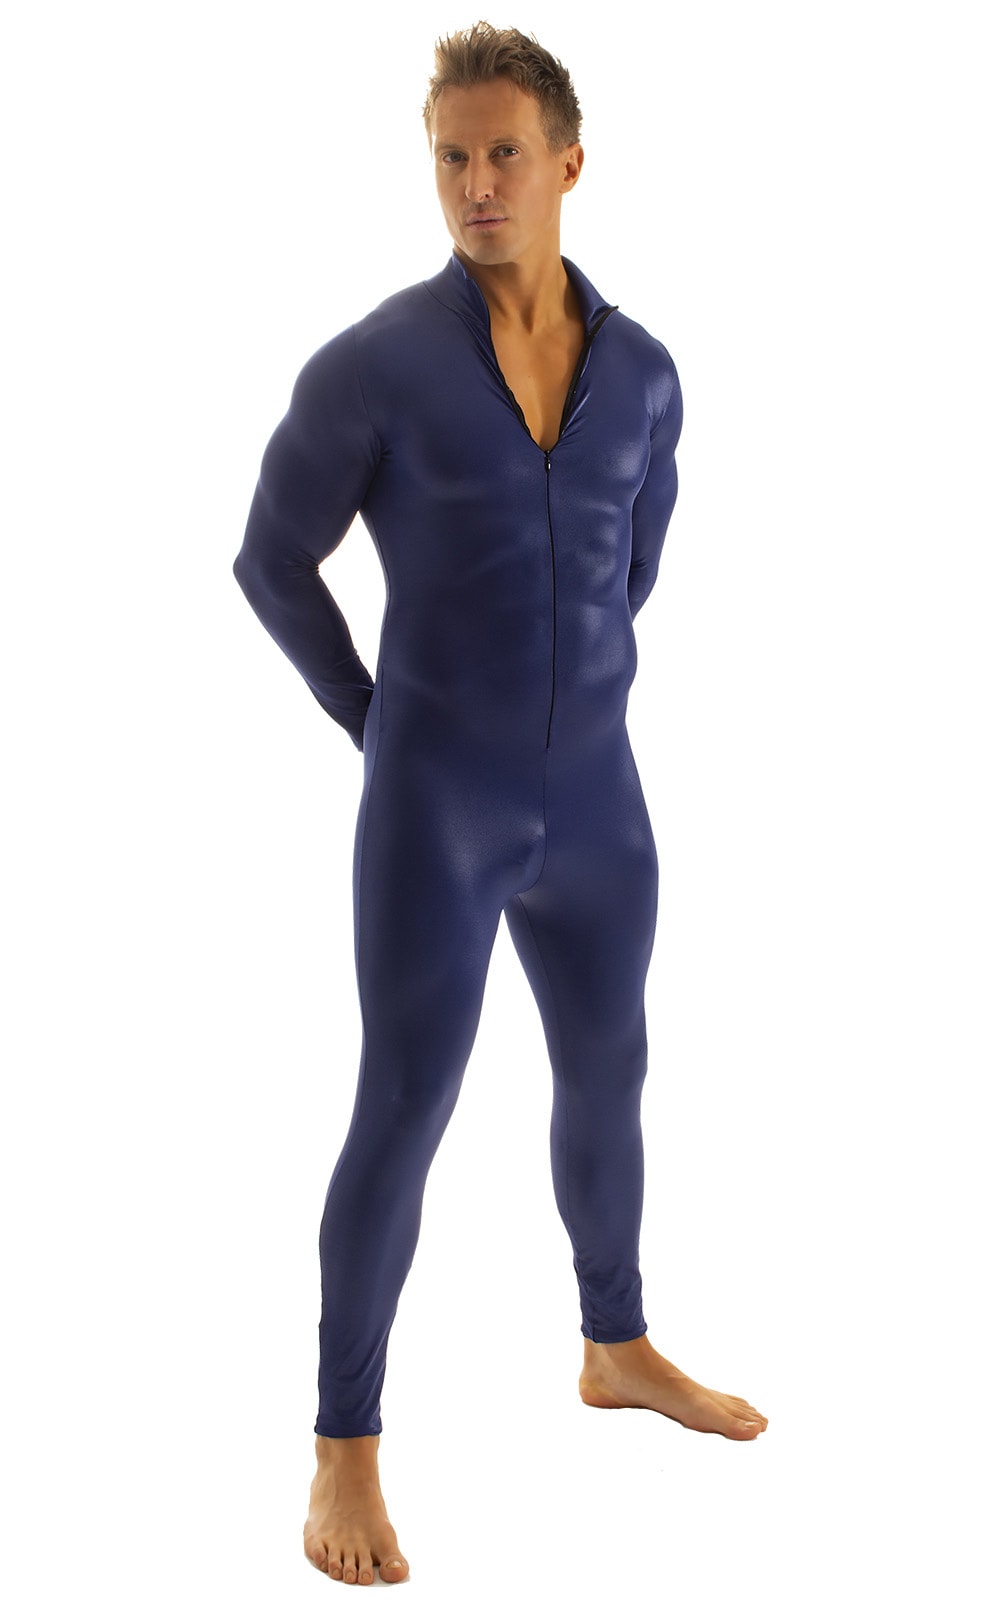 Full Bodysuit Zentai Lycra Spandex Suit for men in Wet Look Navy Blue, Front Alternative